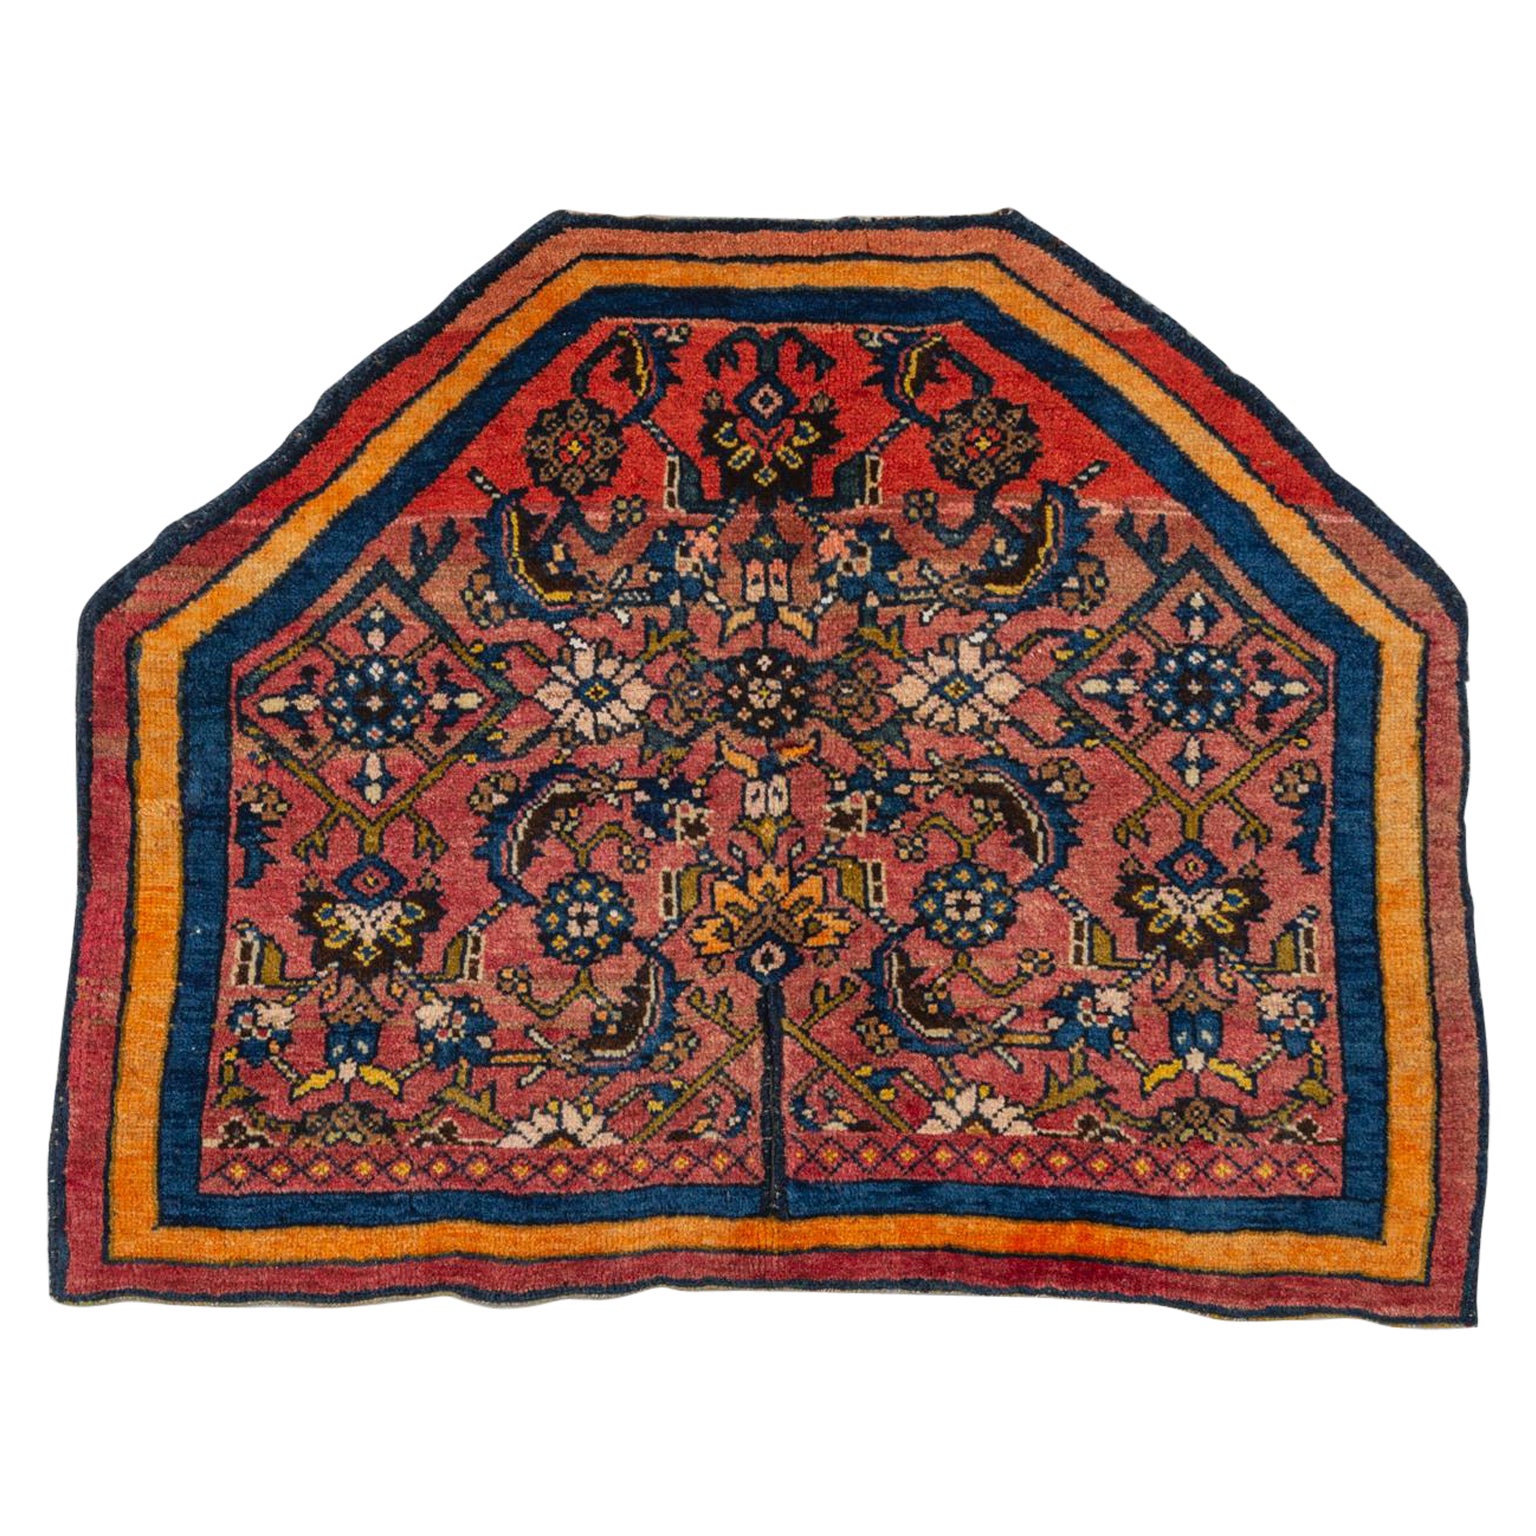 Antique Saddle- Carpet from Caucasus